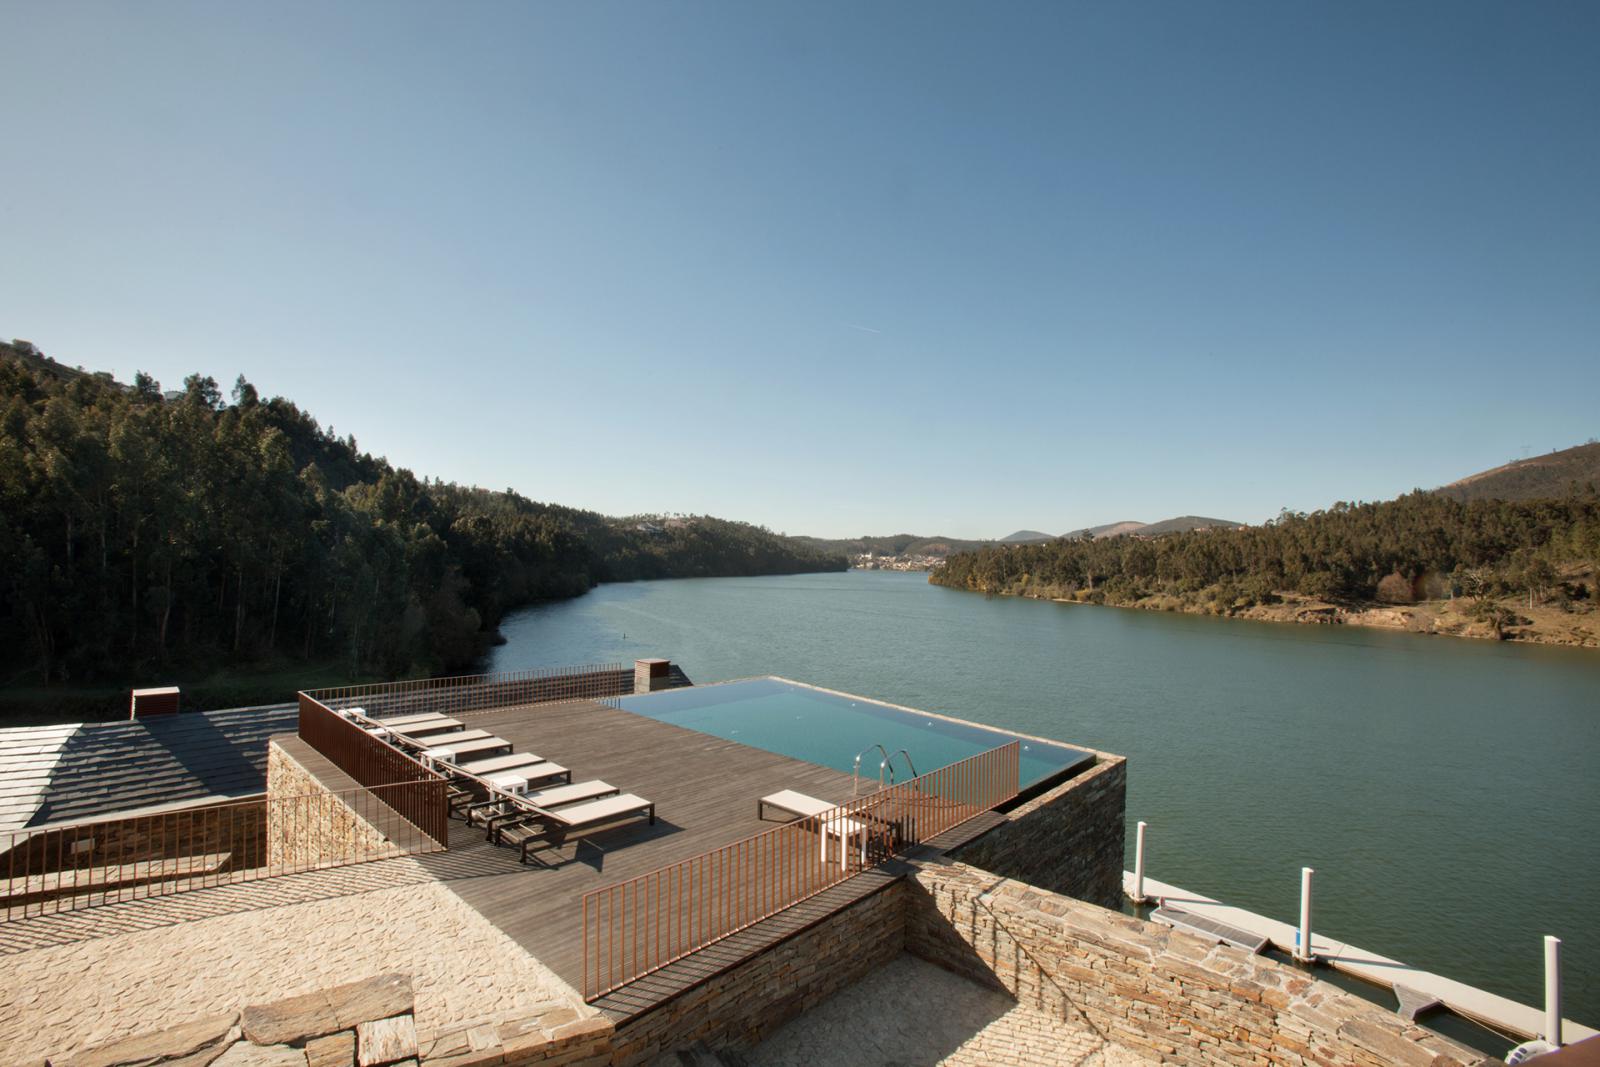 Douro41: спа, вино и река